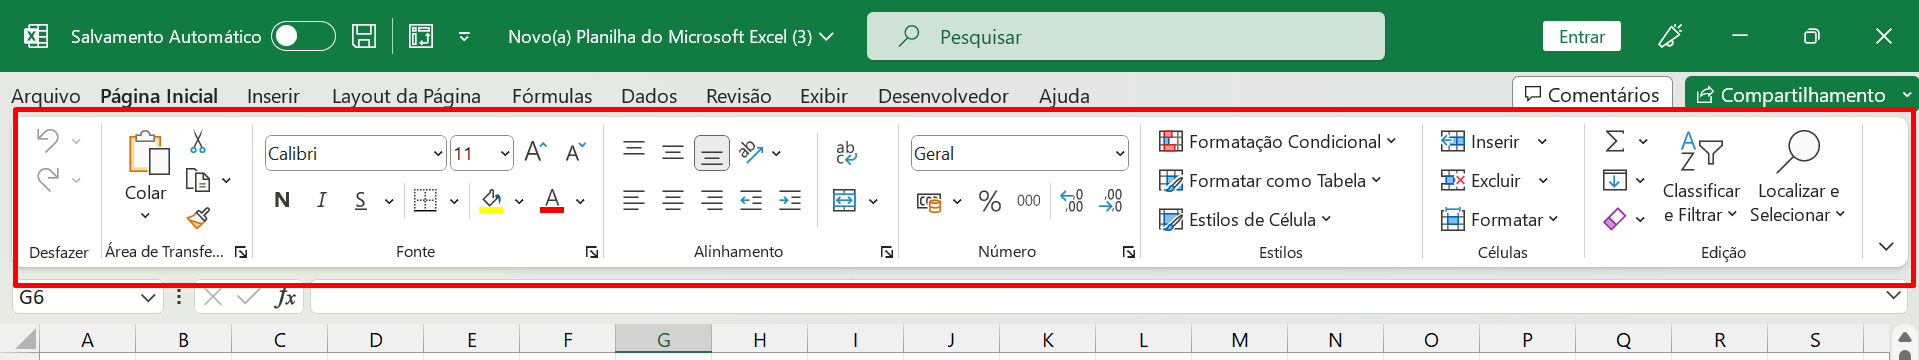 Faixa de Opções no Excel